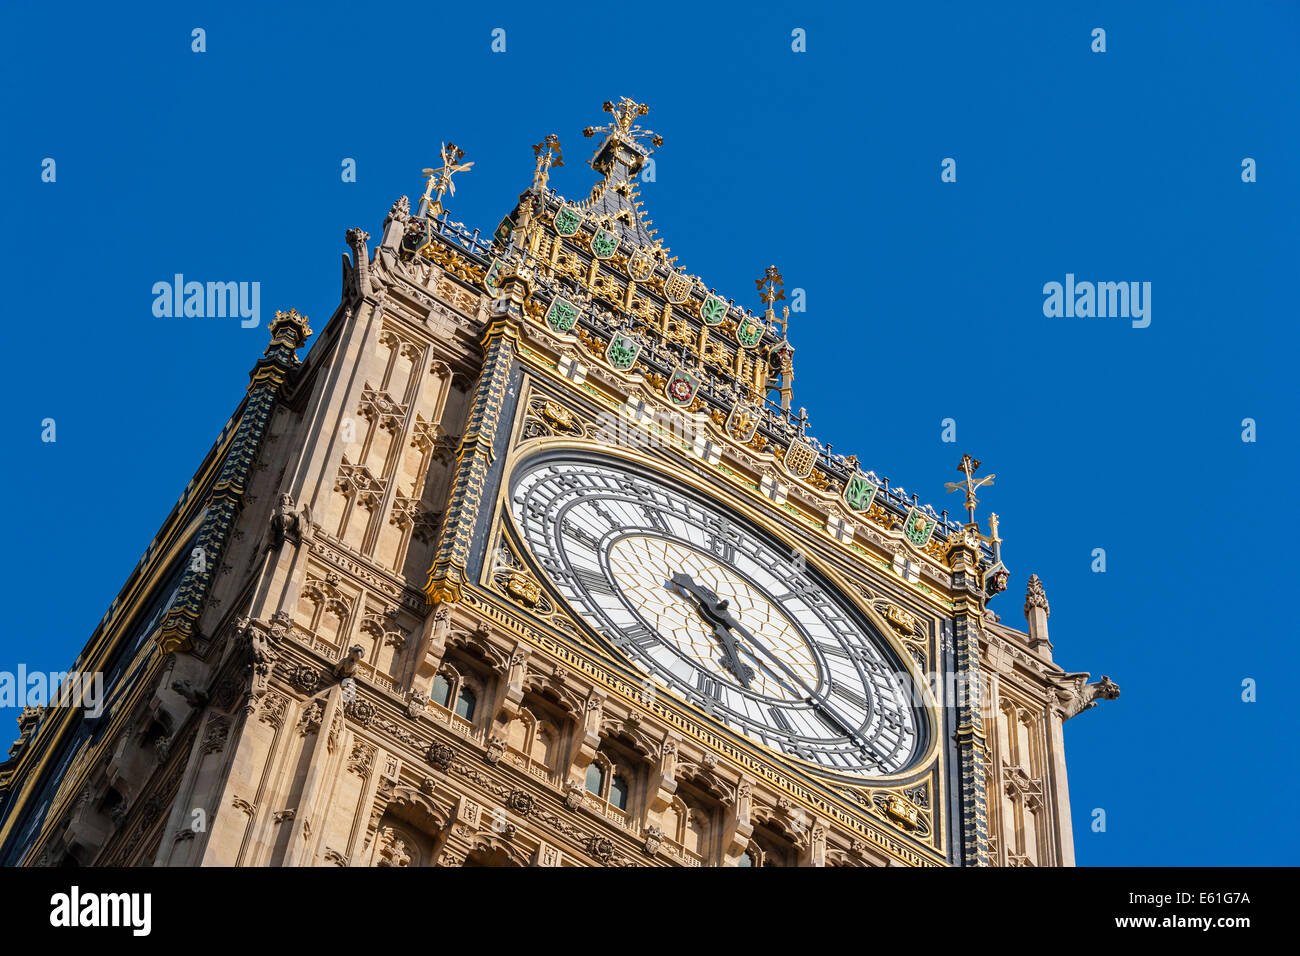 Elizabeth Carter torre orologio comunemente noto come Big Ben presso le Case del Parlamento Londra England Regno Unito. JMH6360 Foto Stock